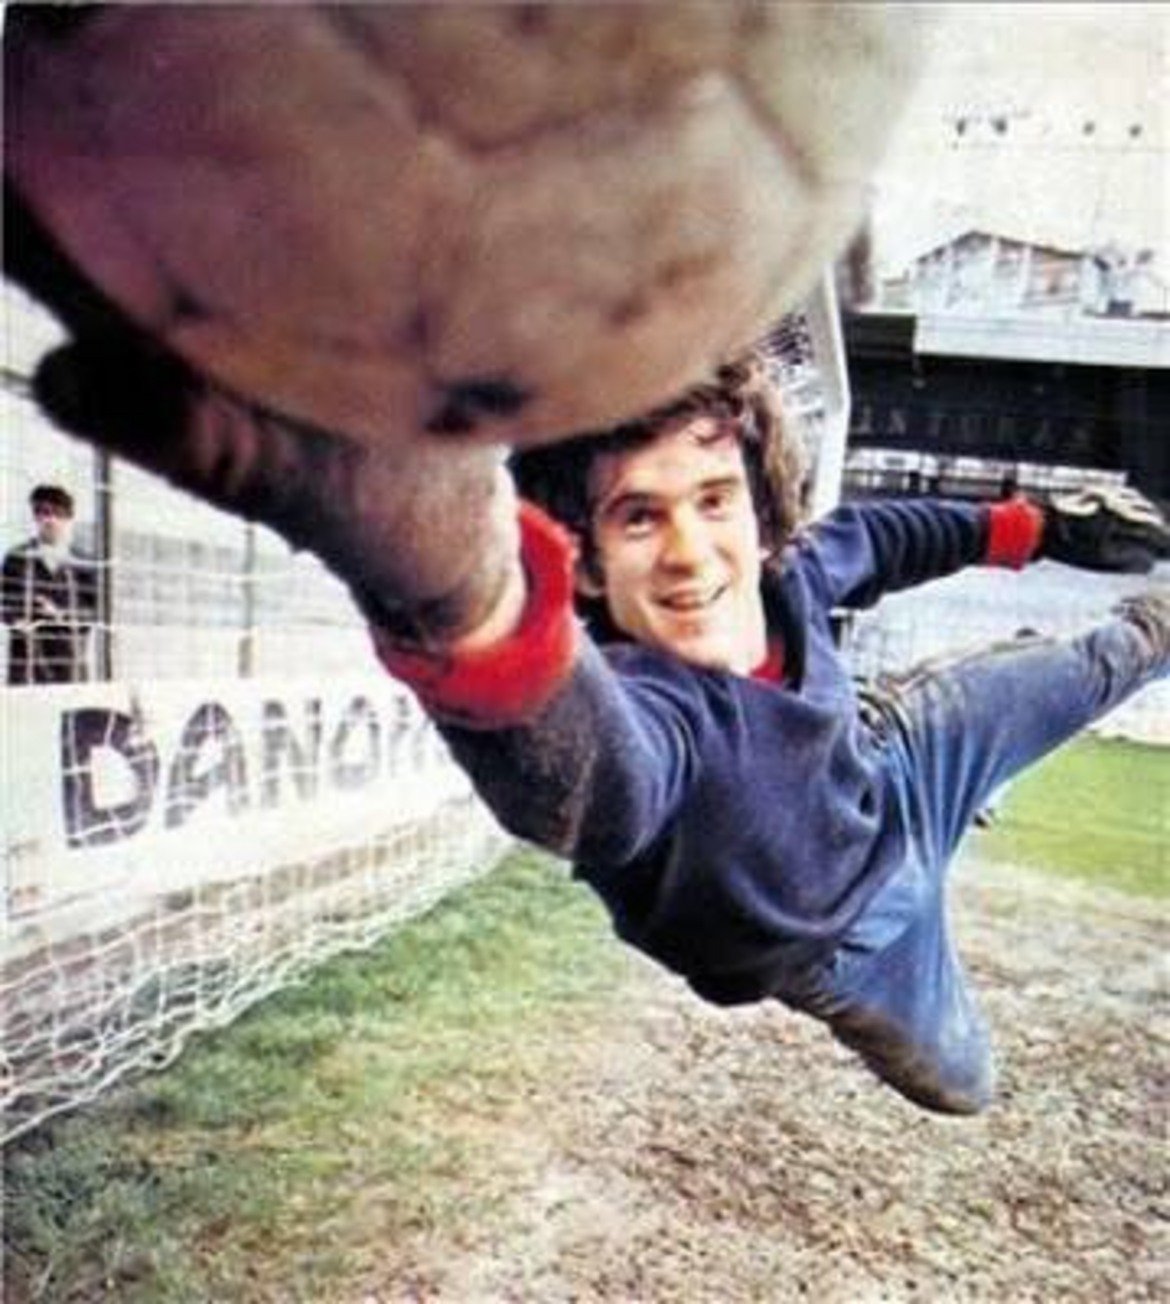 Луис Арконада е сред футболистите, които отдават цялата си кариера на един-единствен отбор. Роденият в Сан Себастиан вратар е продукт на академията и пази за Реал Сосиедад в продължение на 15 години, записвайки над 400 мача за клуба. Печели Ла Лига през 1980/81 и 1981/82, Купата на Испания през 1986/87 и Суперкупата през 1982 г. Пази и за националния отбор, с който стига до сребърните медали на Евро 1984.